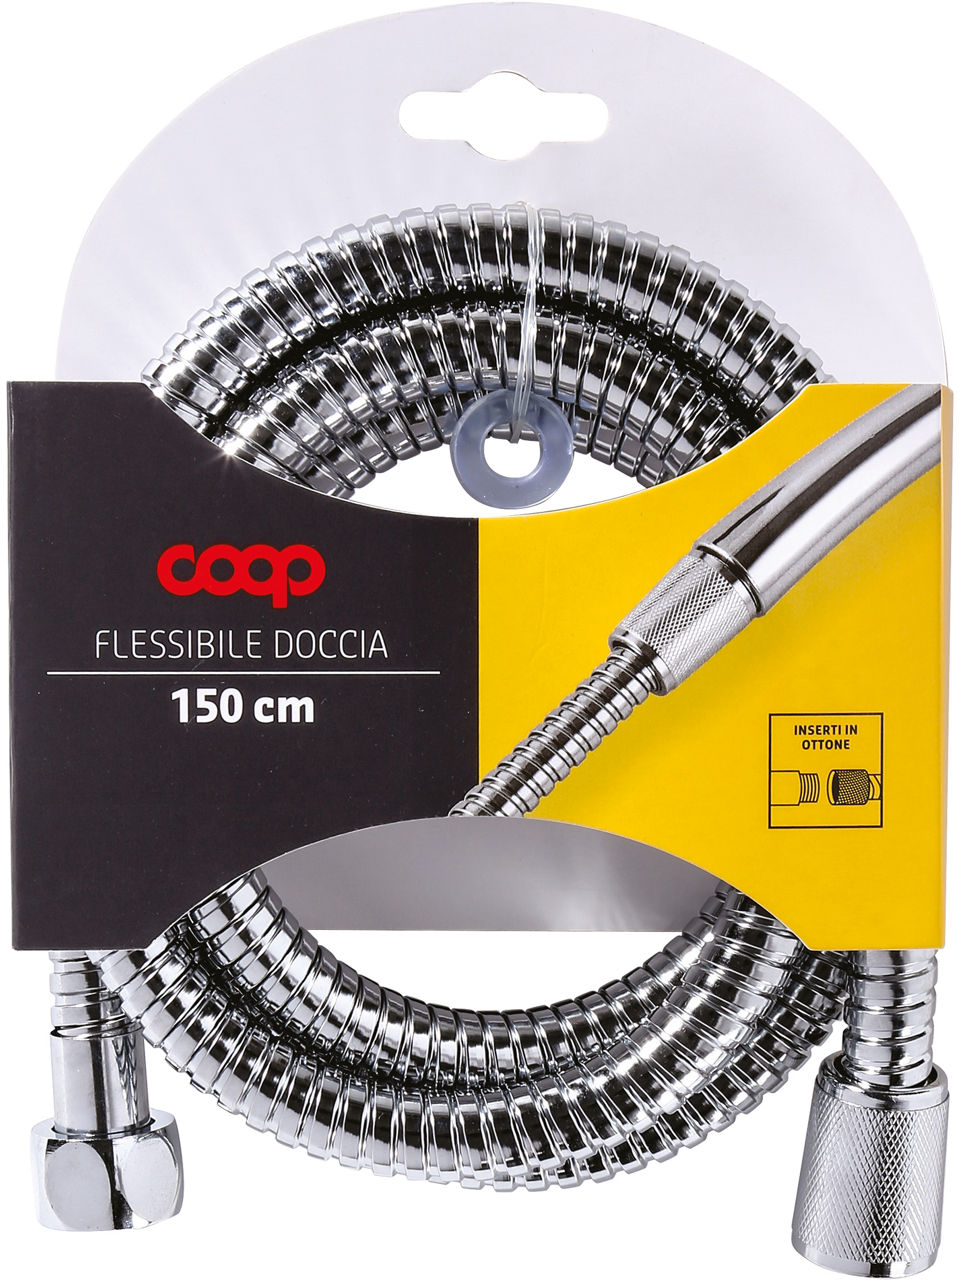 FLESSIBILE DOCCIA 150CM COOP - OTTONATO CONICO - DIA13,50MM - 0